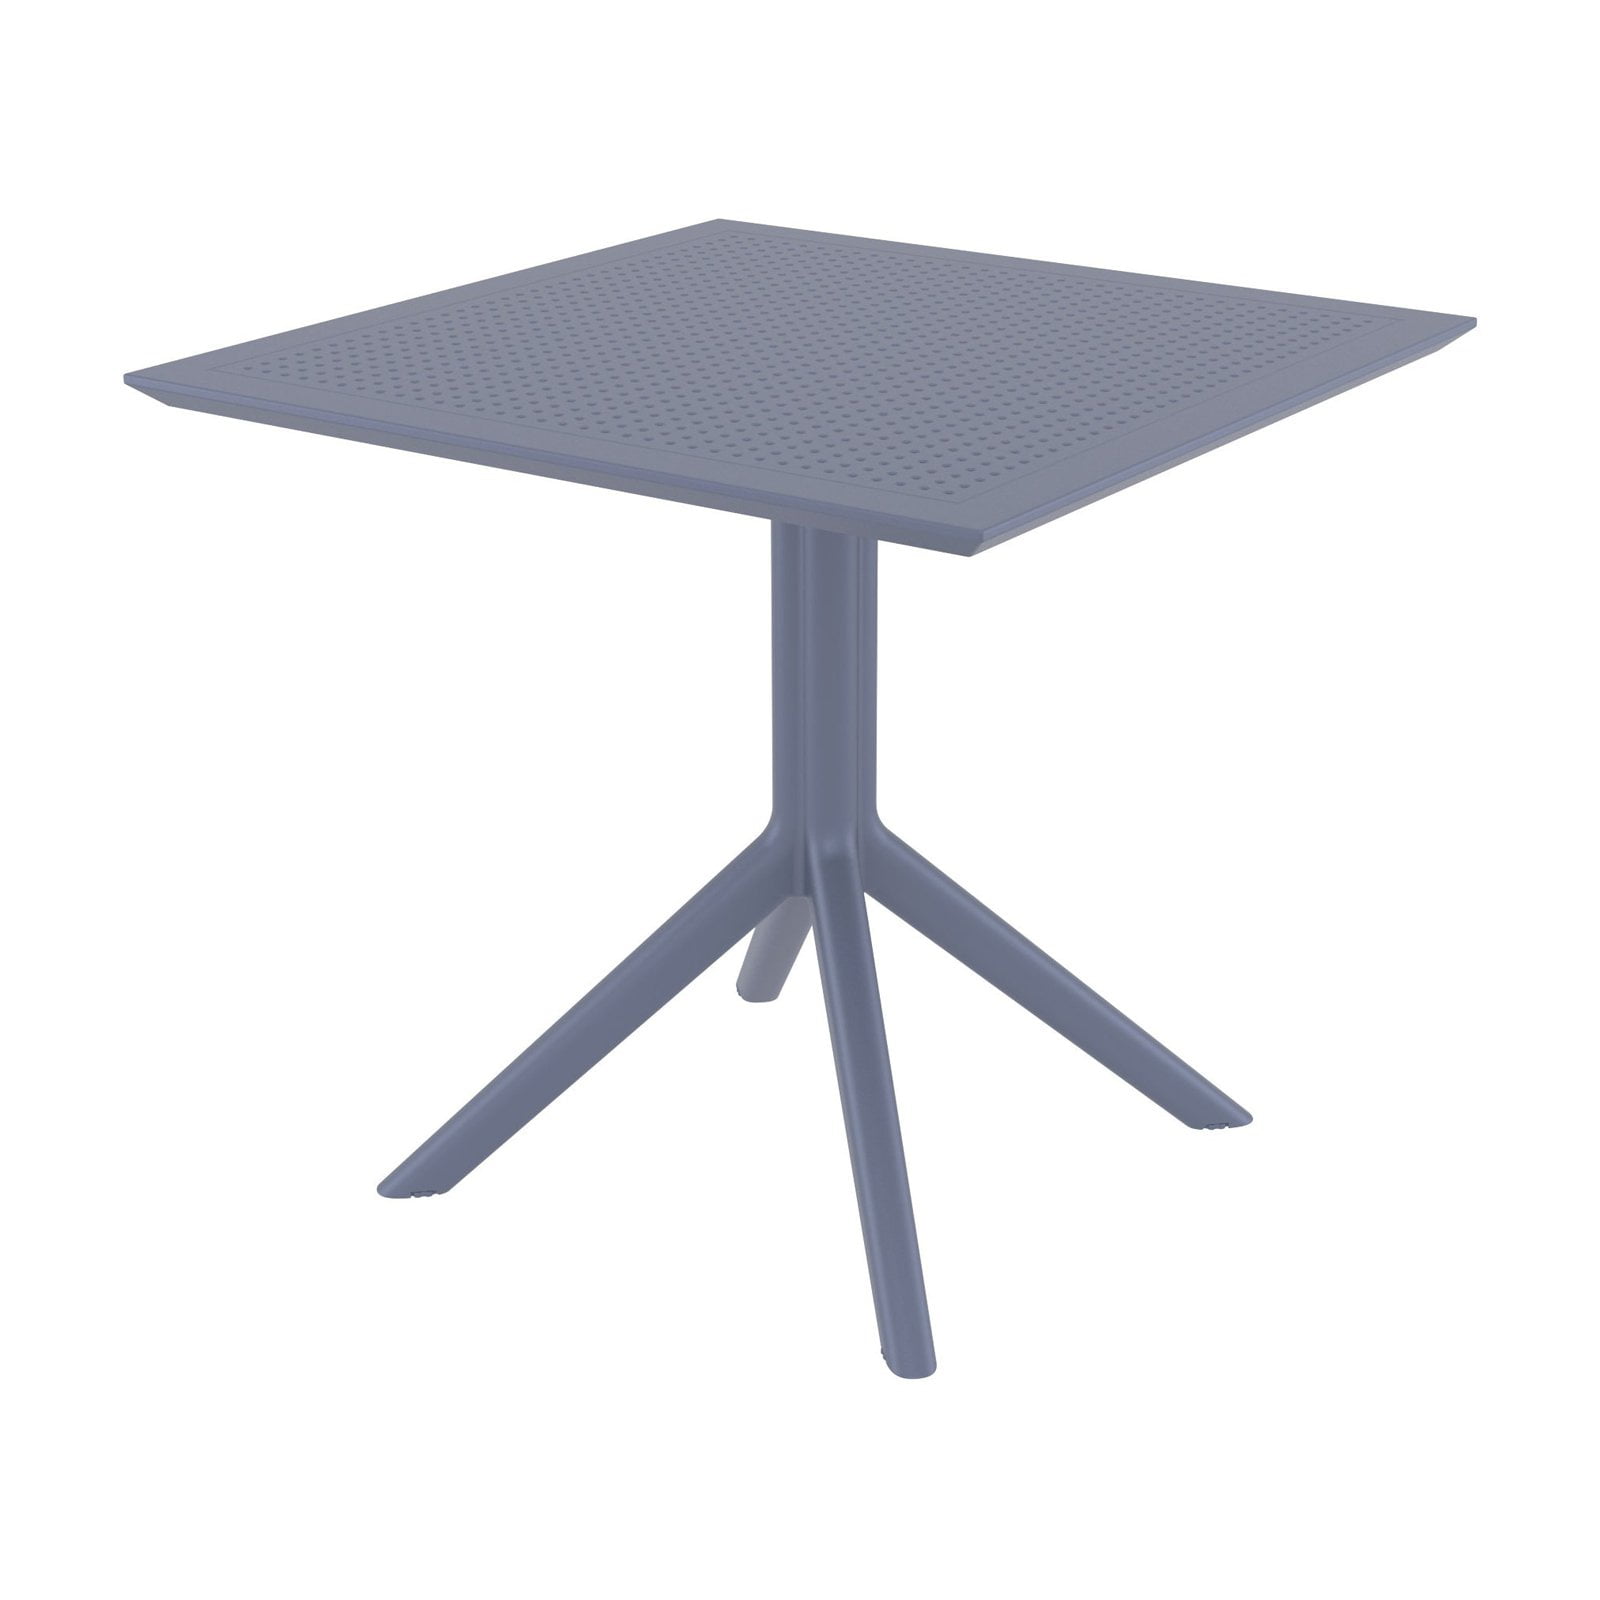 Isp106-dgr 31 In. Sky Square Table, Dark Gray